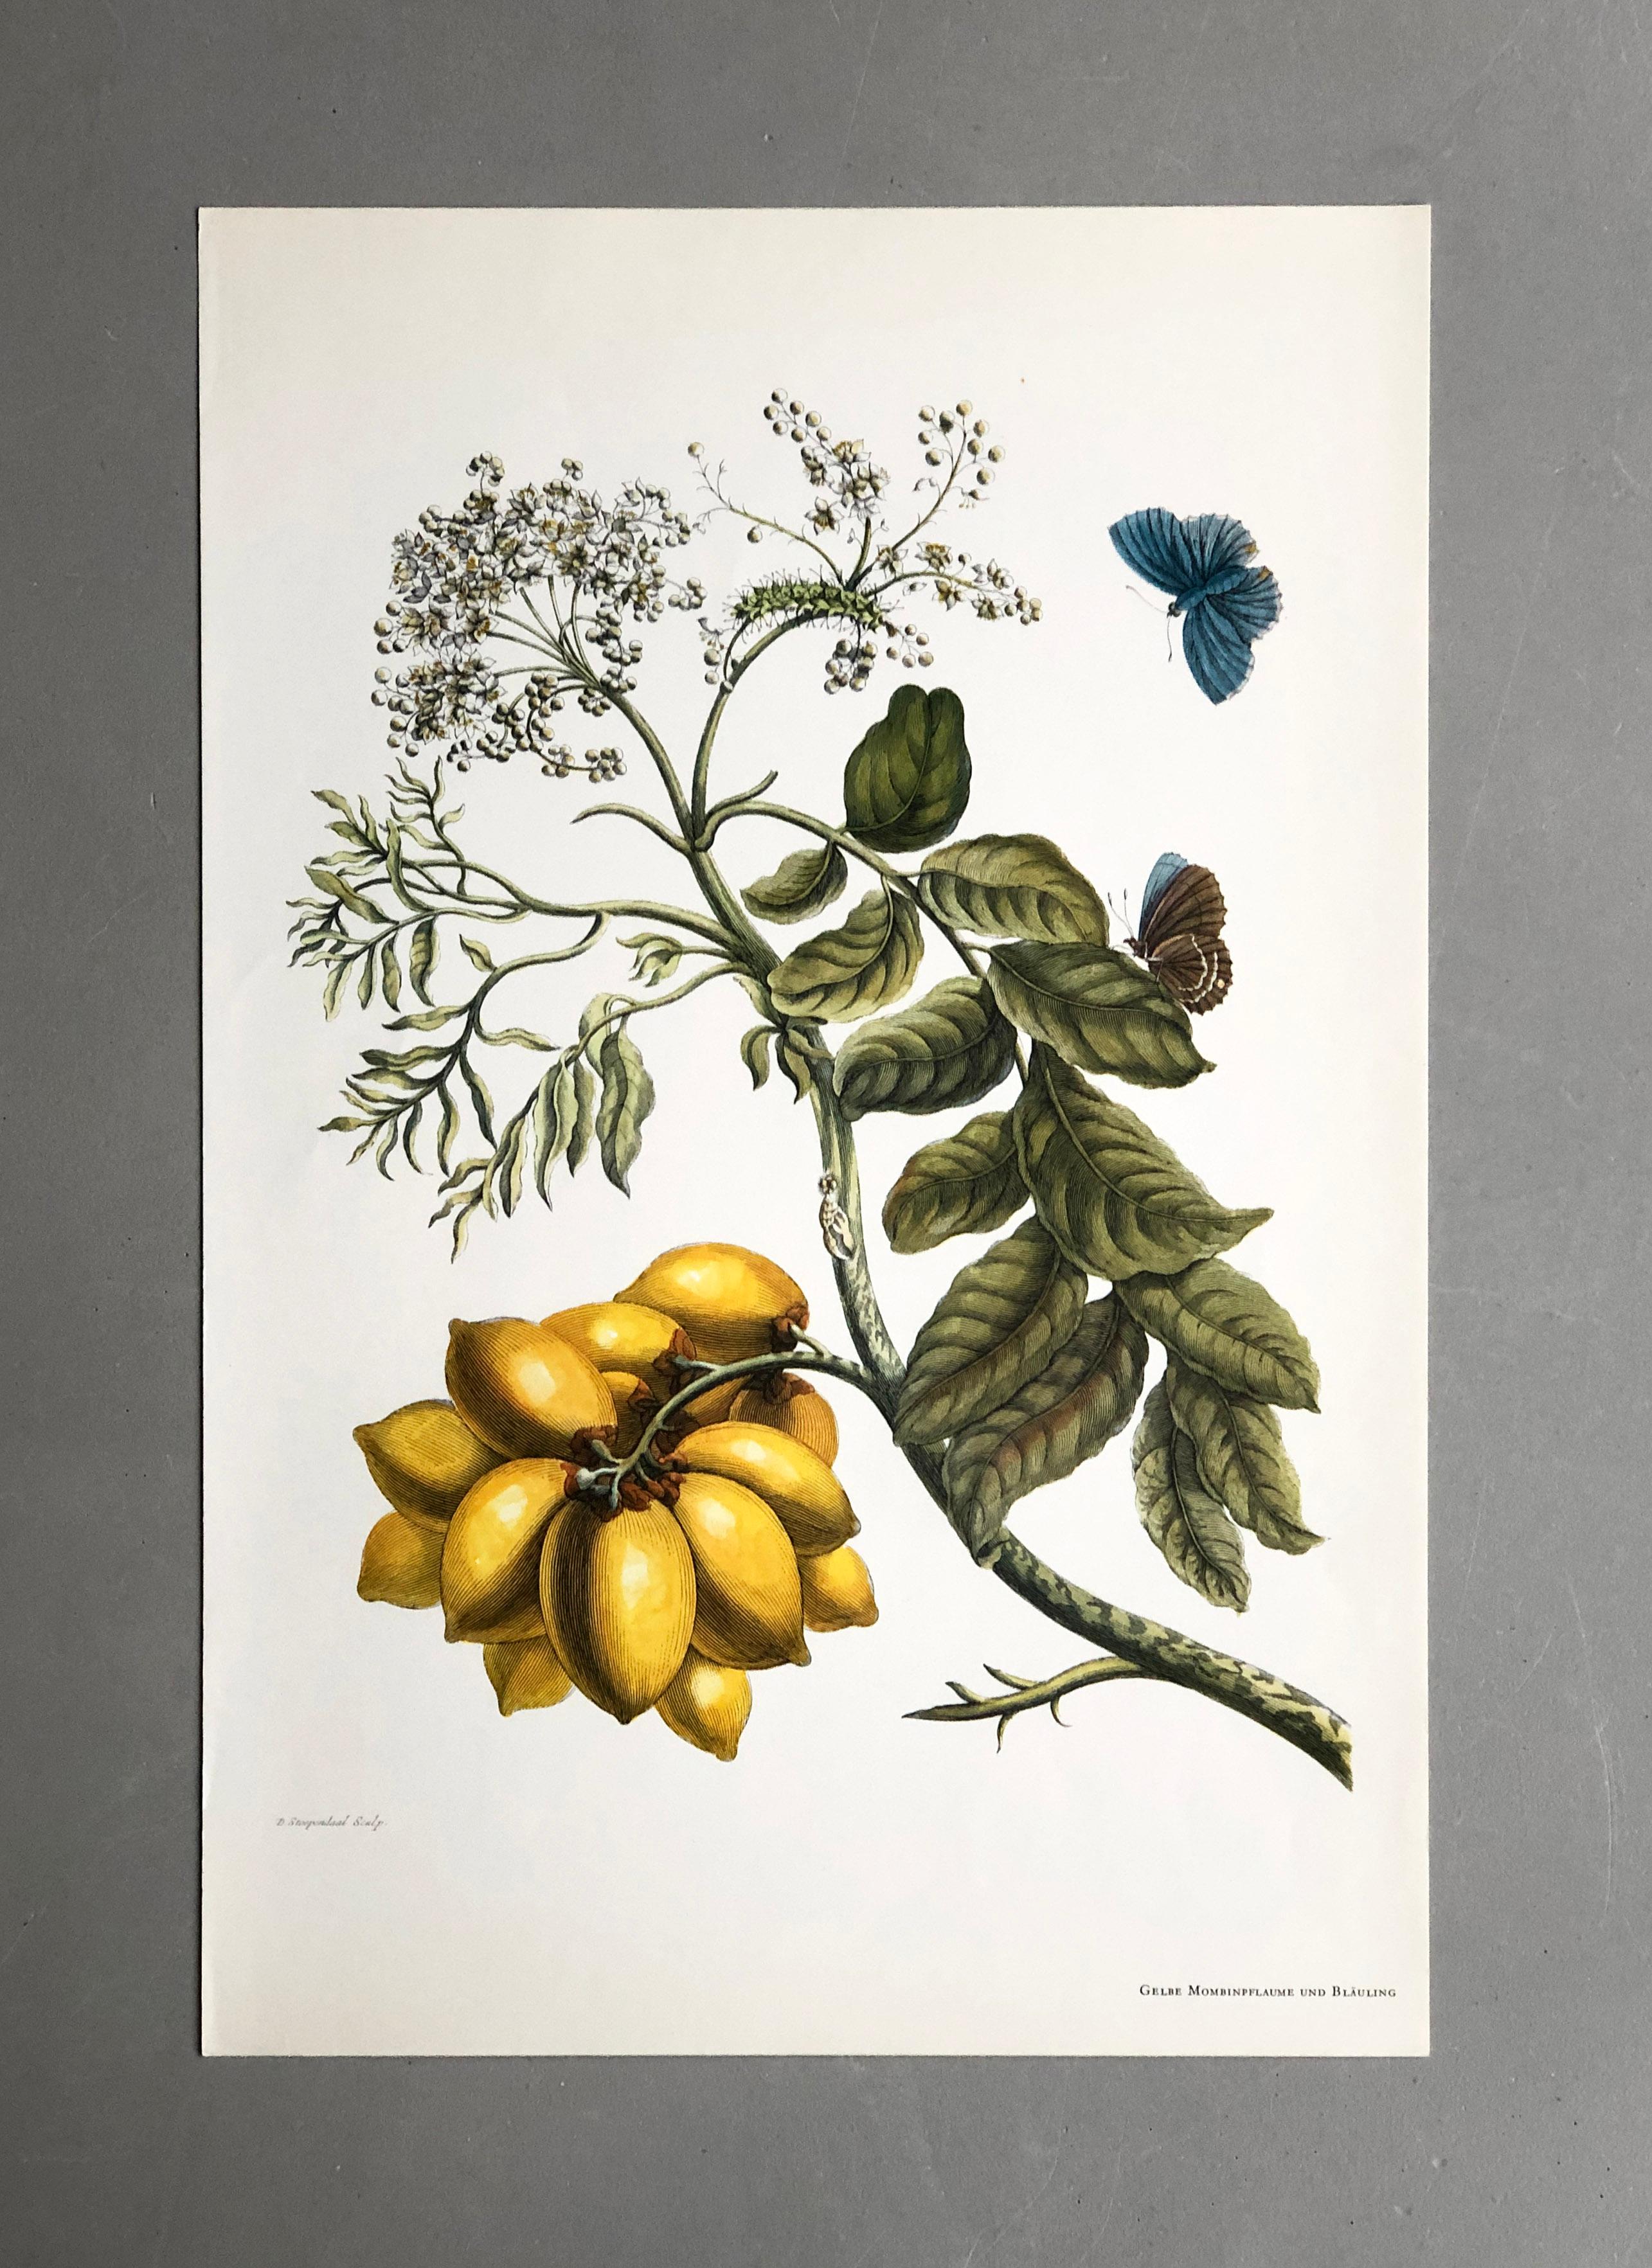 Aus Metamorphosis Insectorum Surinamensium, erstmals veröffentlicht 1705
Kupferstiche von J. Mulder, P. Sluyter (Sluiter) und D. Stoopendaal nach Maria Sybilla Merian.

Dieser Teller ist Teil einer umfassenden Sammlung von 17 Tellern. Sehen Sie sich